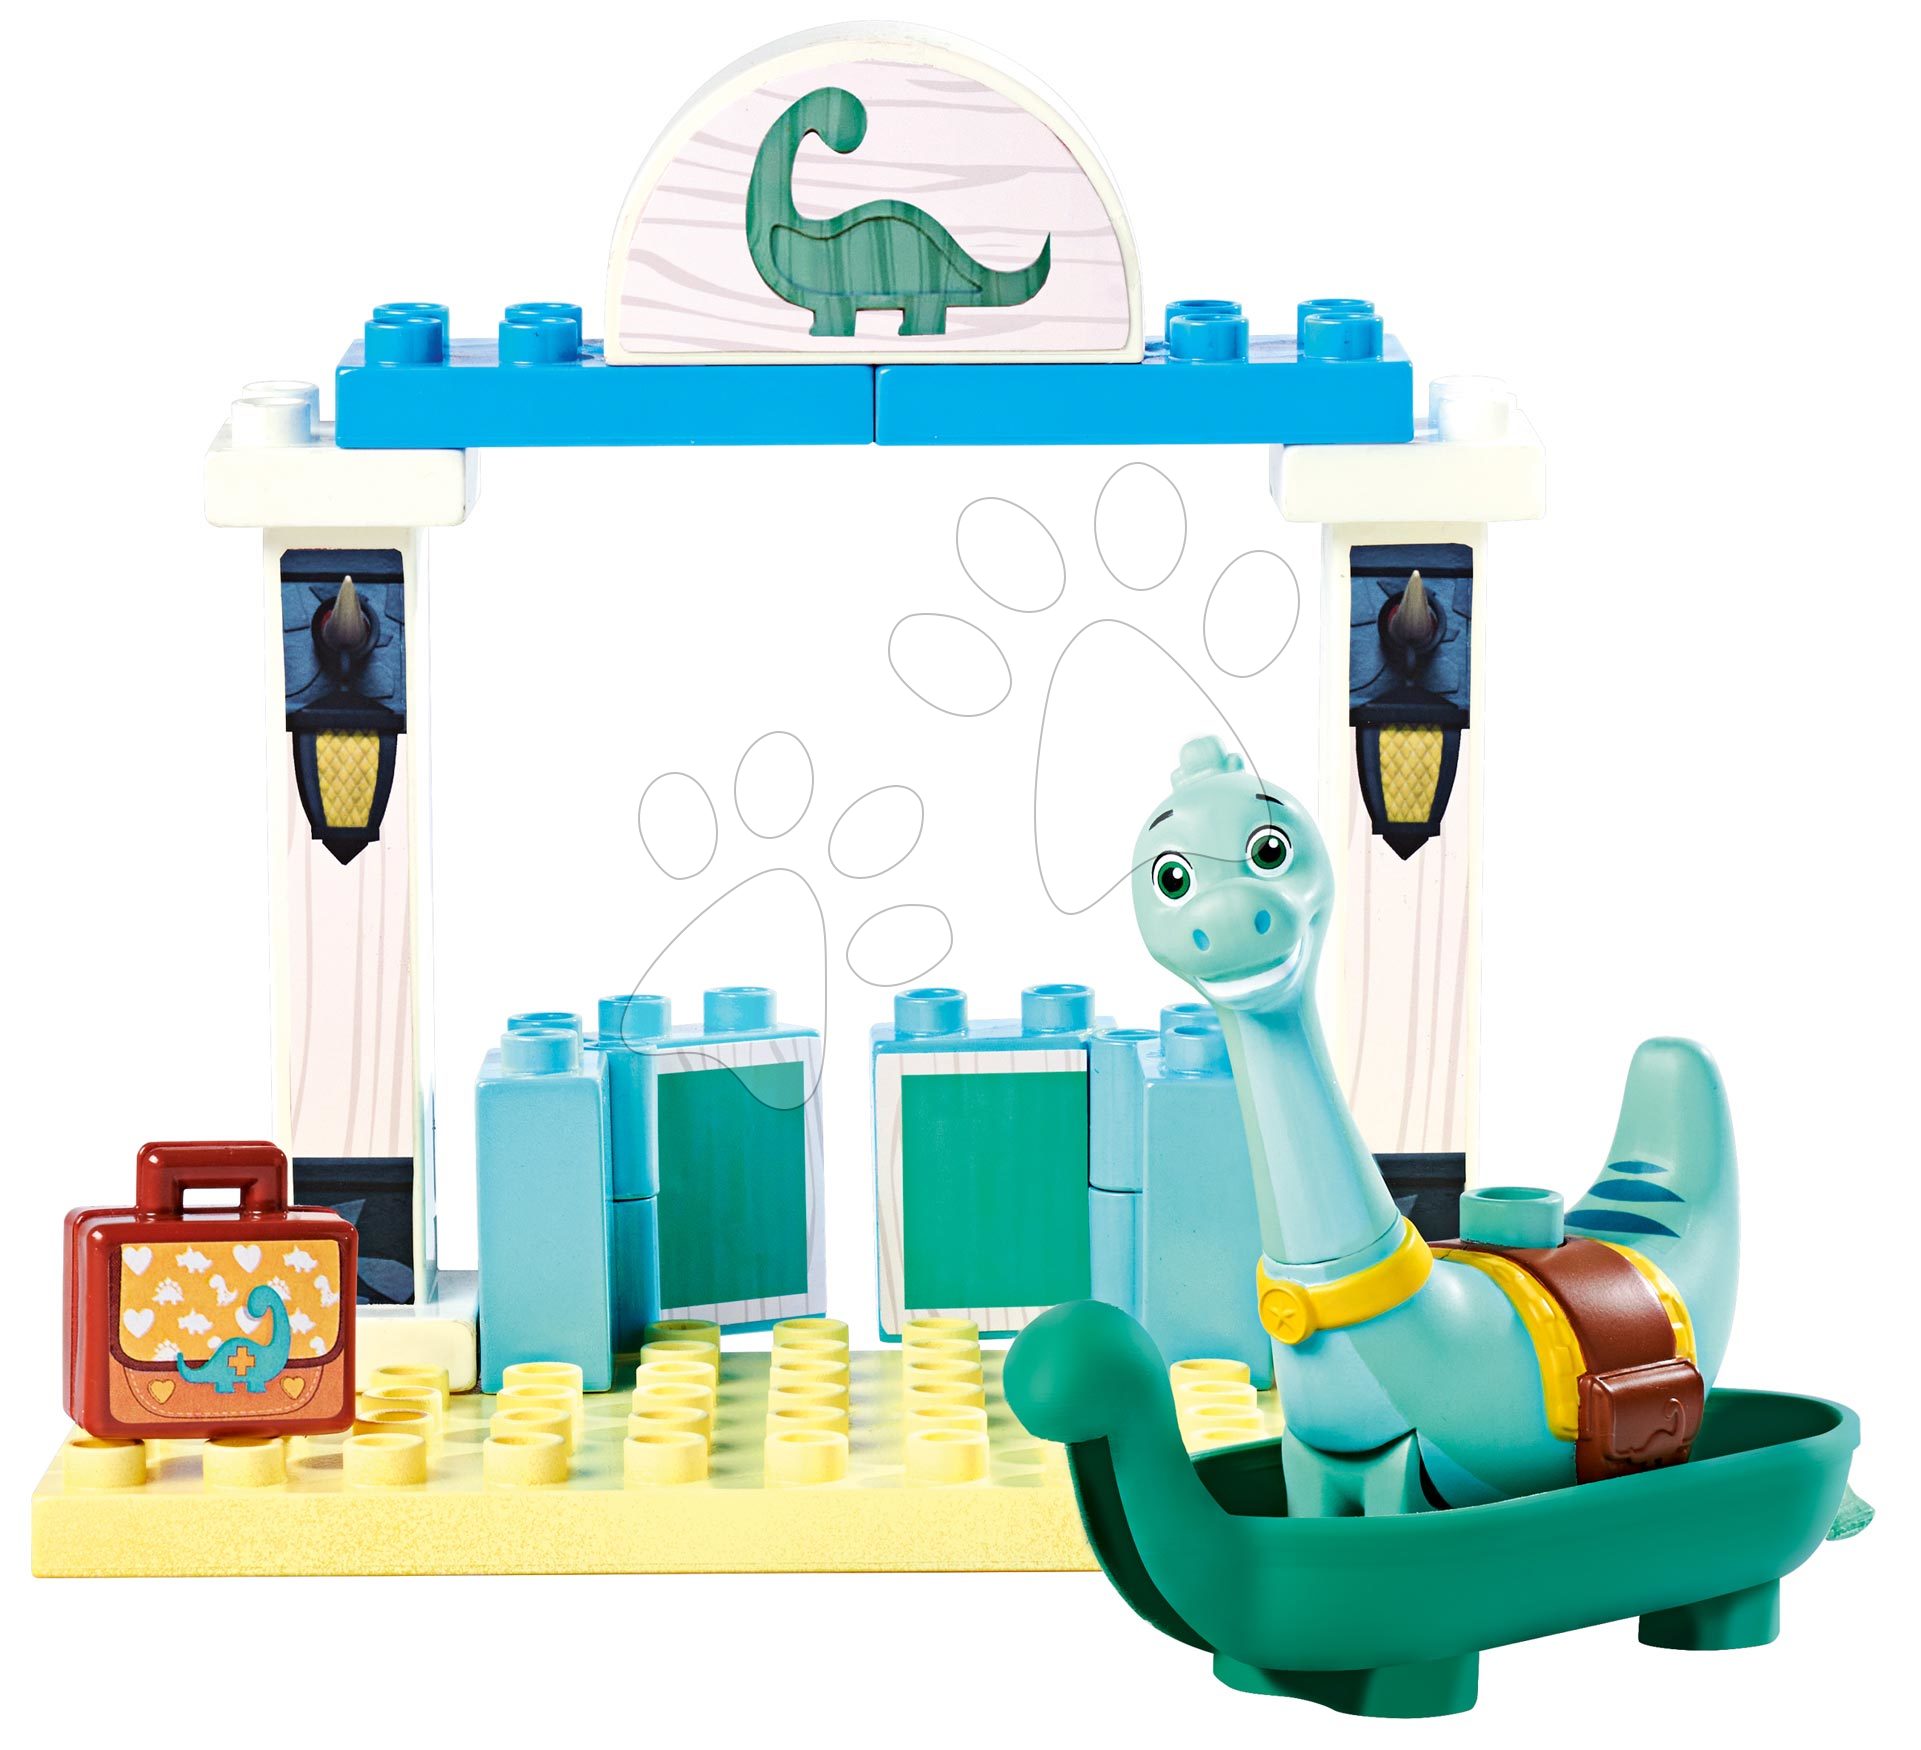 Építőjáték Dino Ranch Clover Basic Set PlayBig Bloxx BIG dínó figurával fürdőszobában 13 darabos 1,5-5 éves korosztálynak